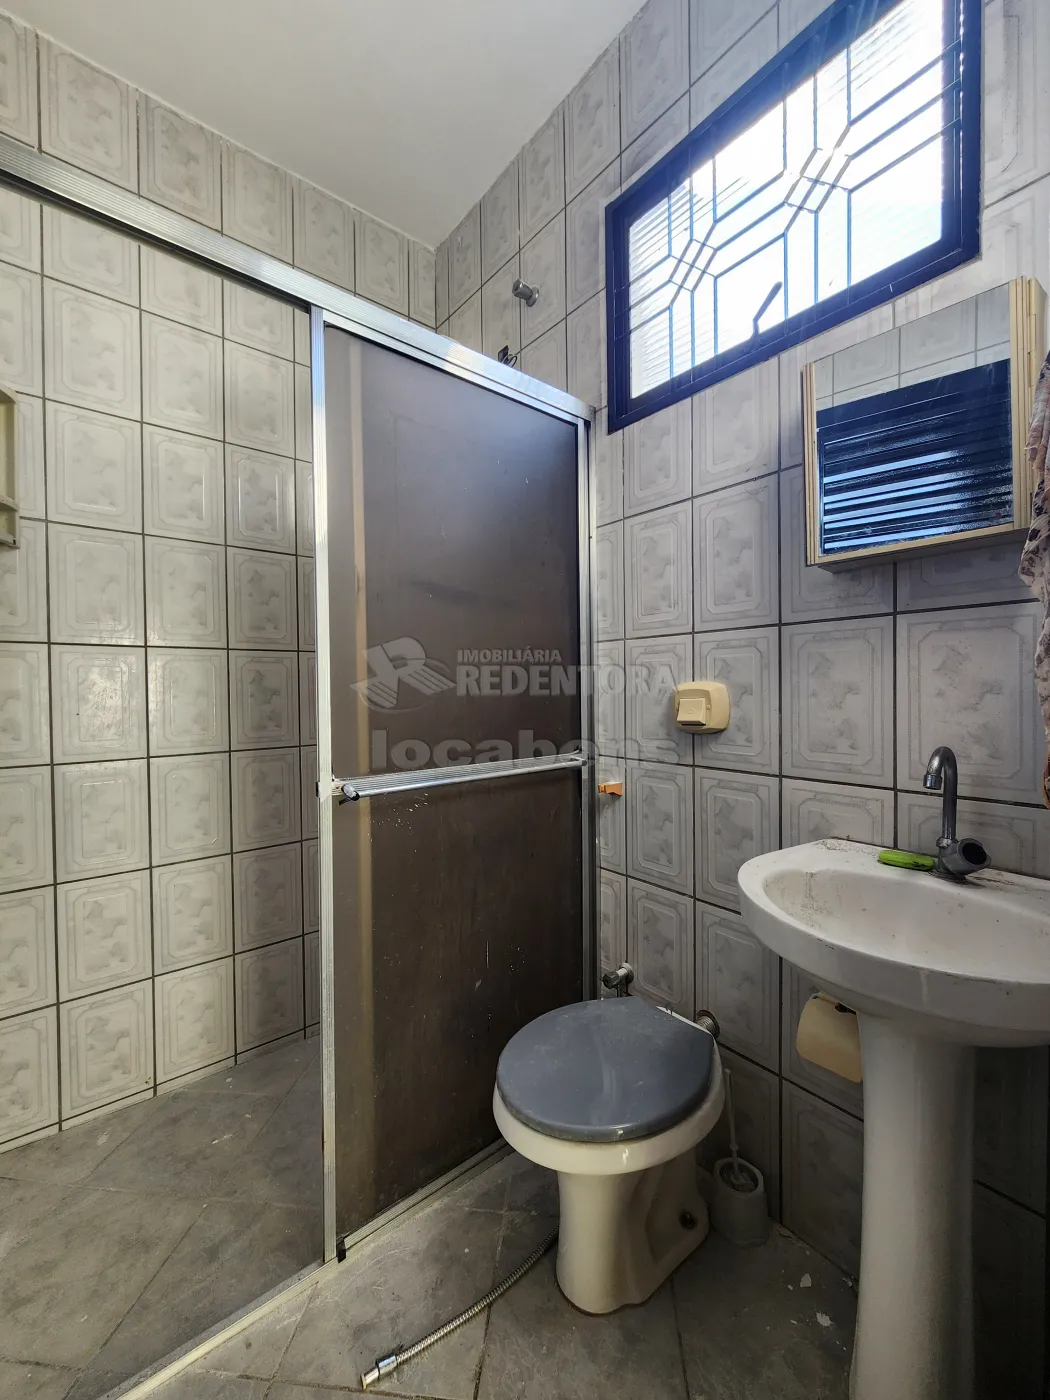 Alugar Casa / Padrão em São José do Rio Preto R$ 850,00 - Foto 6